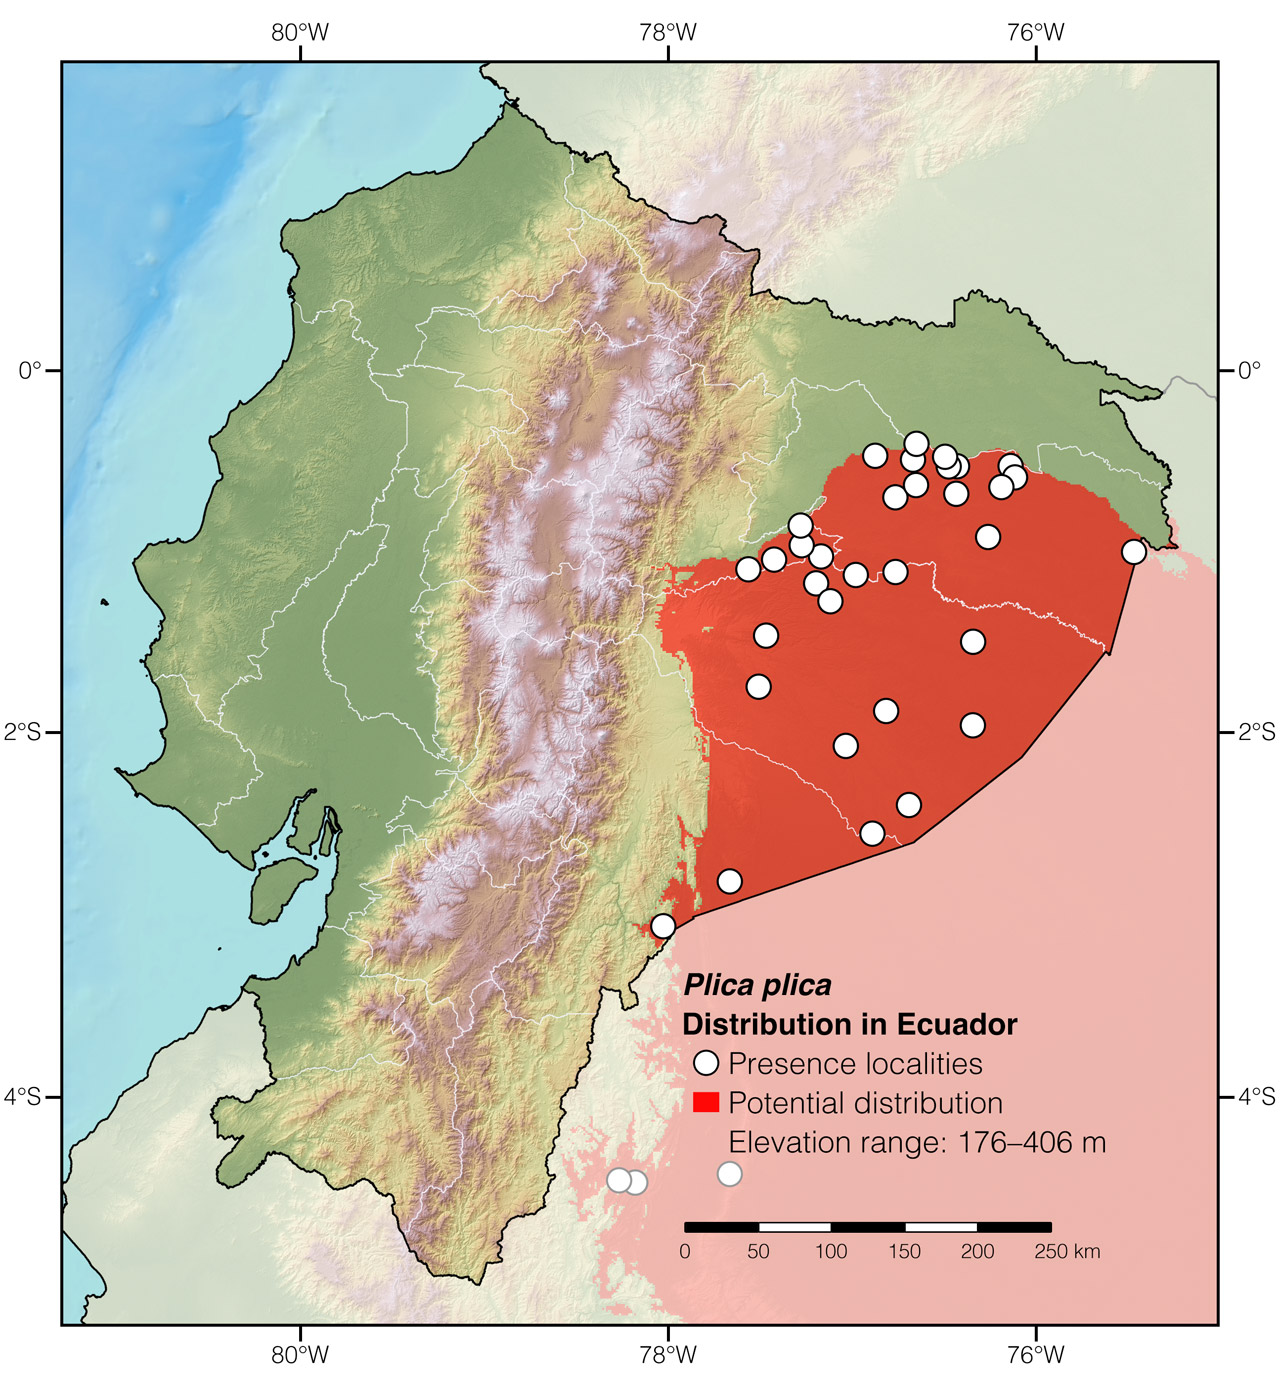 Distribution of Plica plica in Ecuador